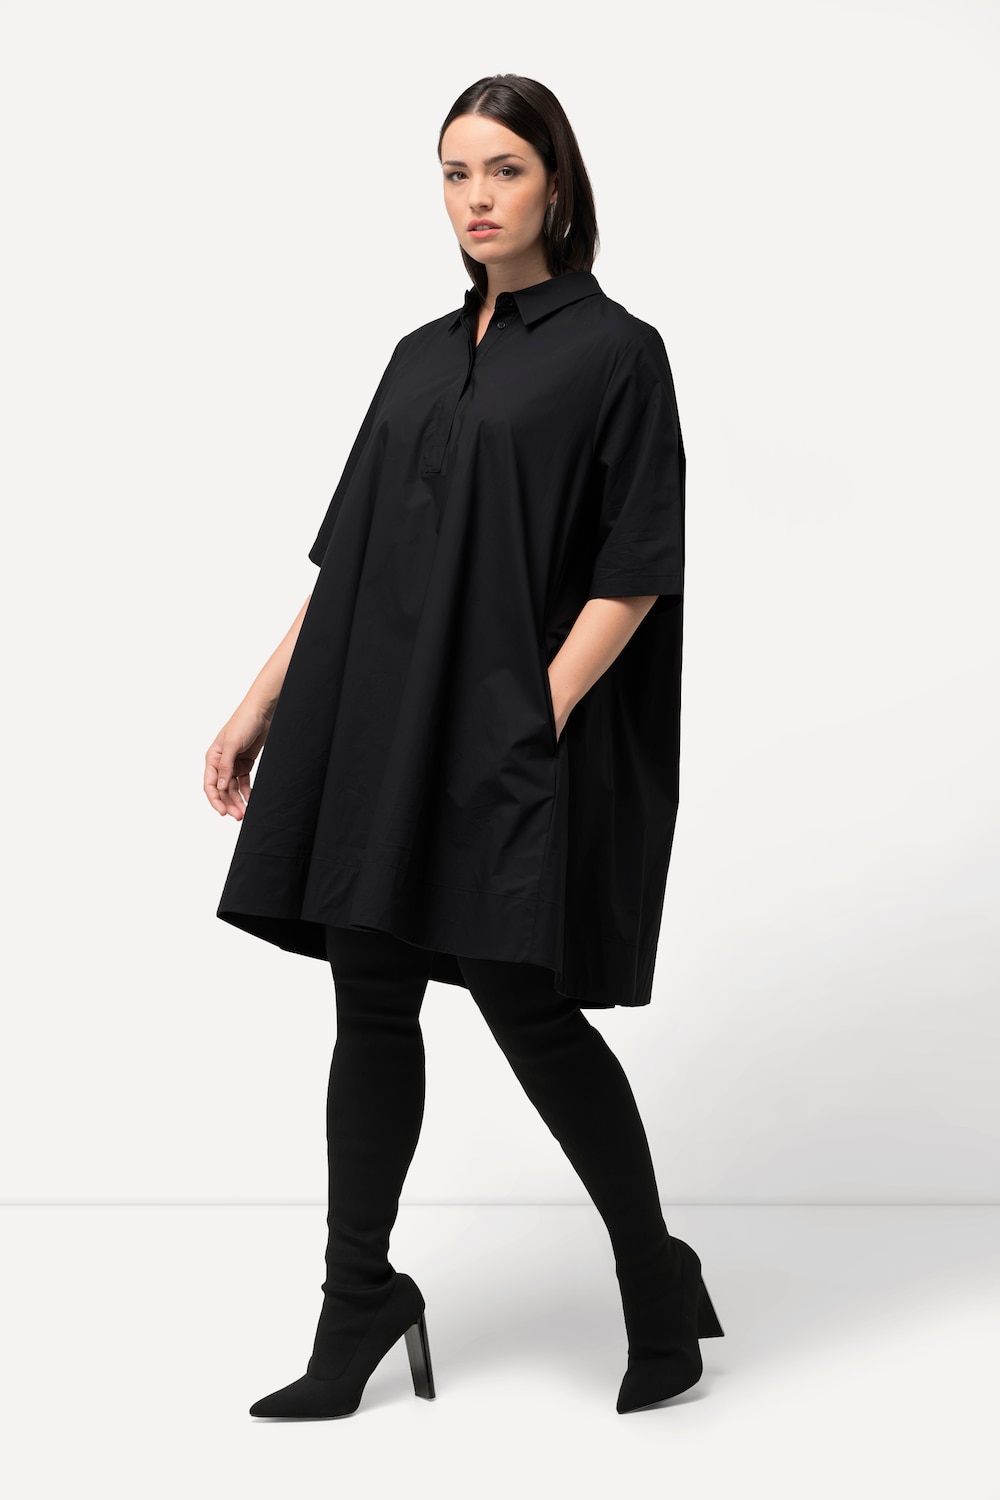 Große Größen Tunika-Kleid, Damen, schwarz, Größe: 54/56, Baumwolle, Ulla Popken von Ulla Popken